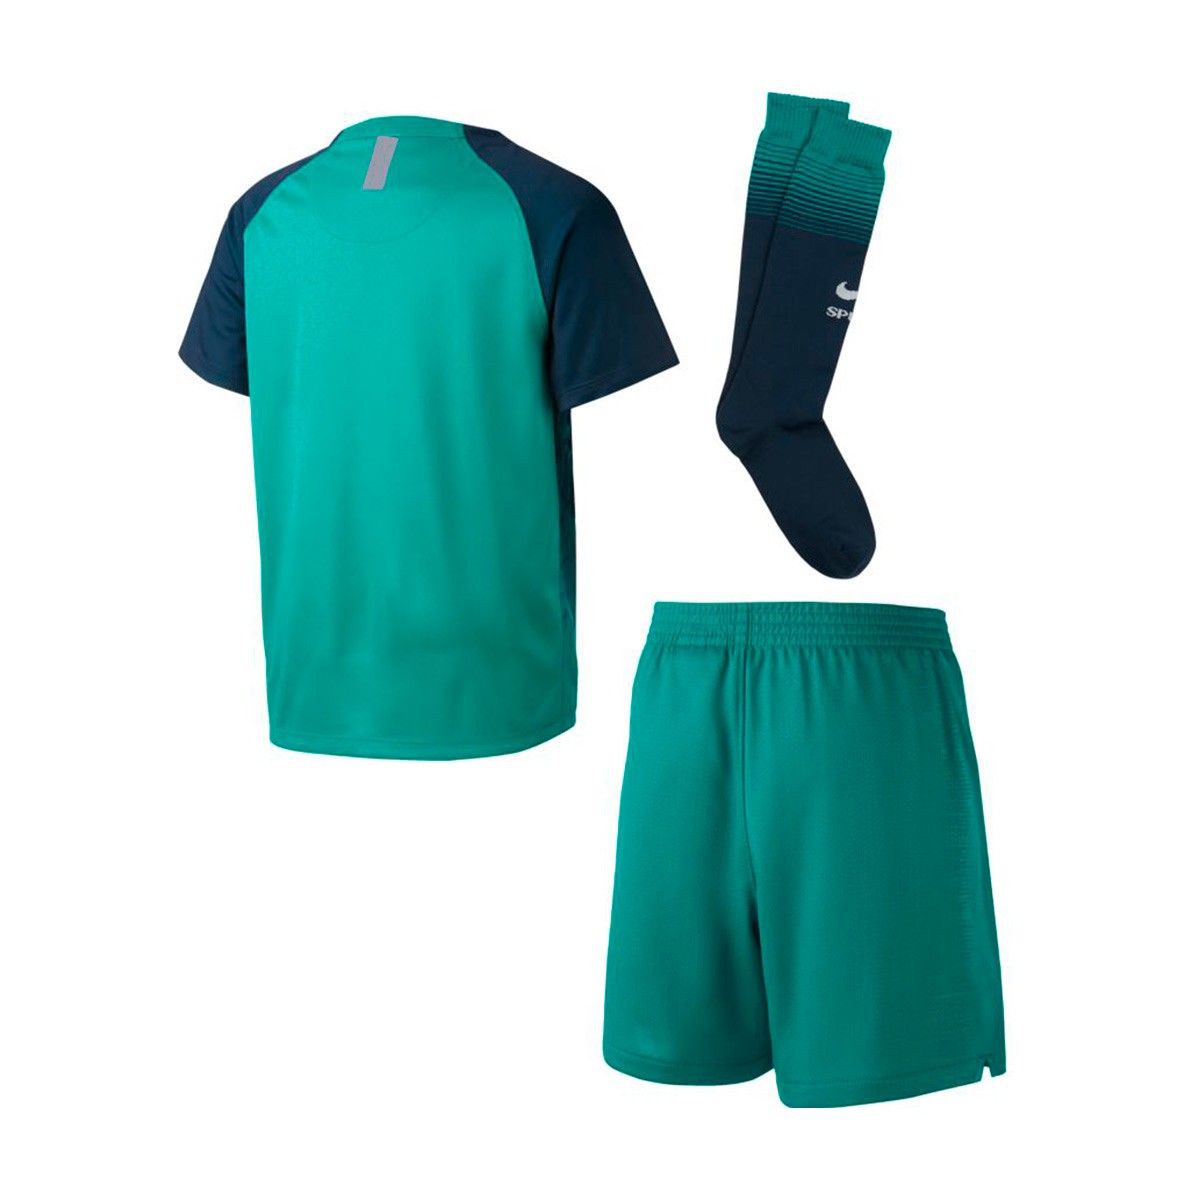 tottenham third kit shorts